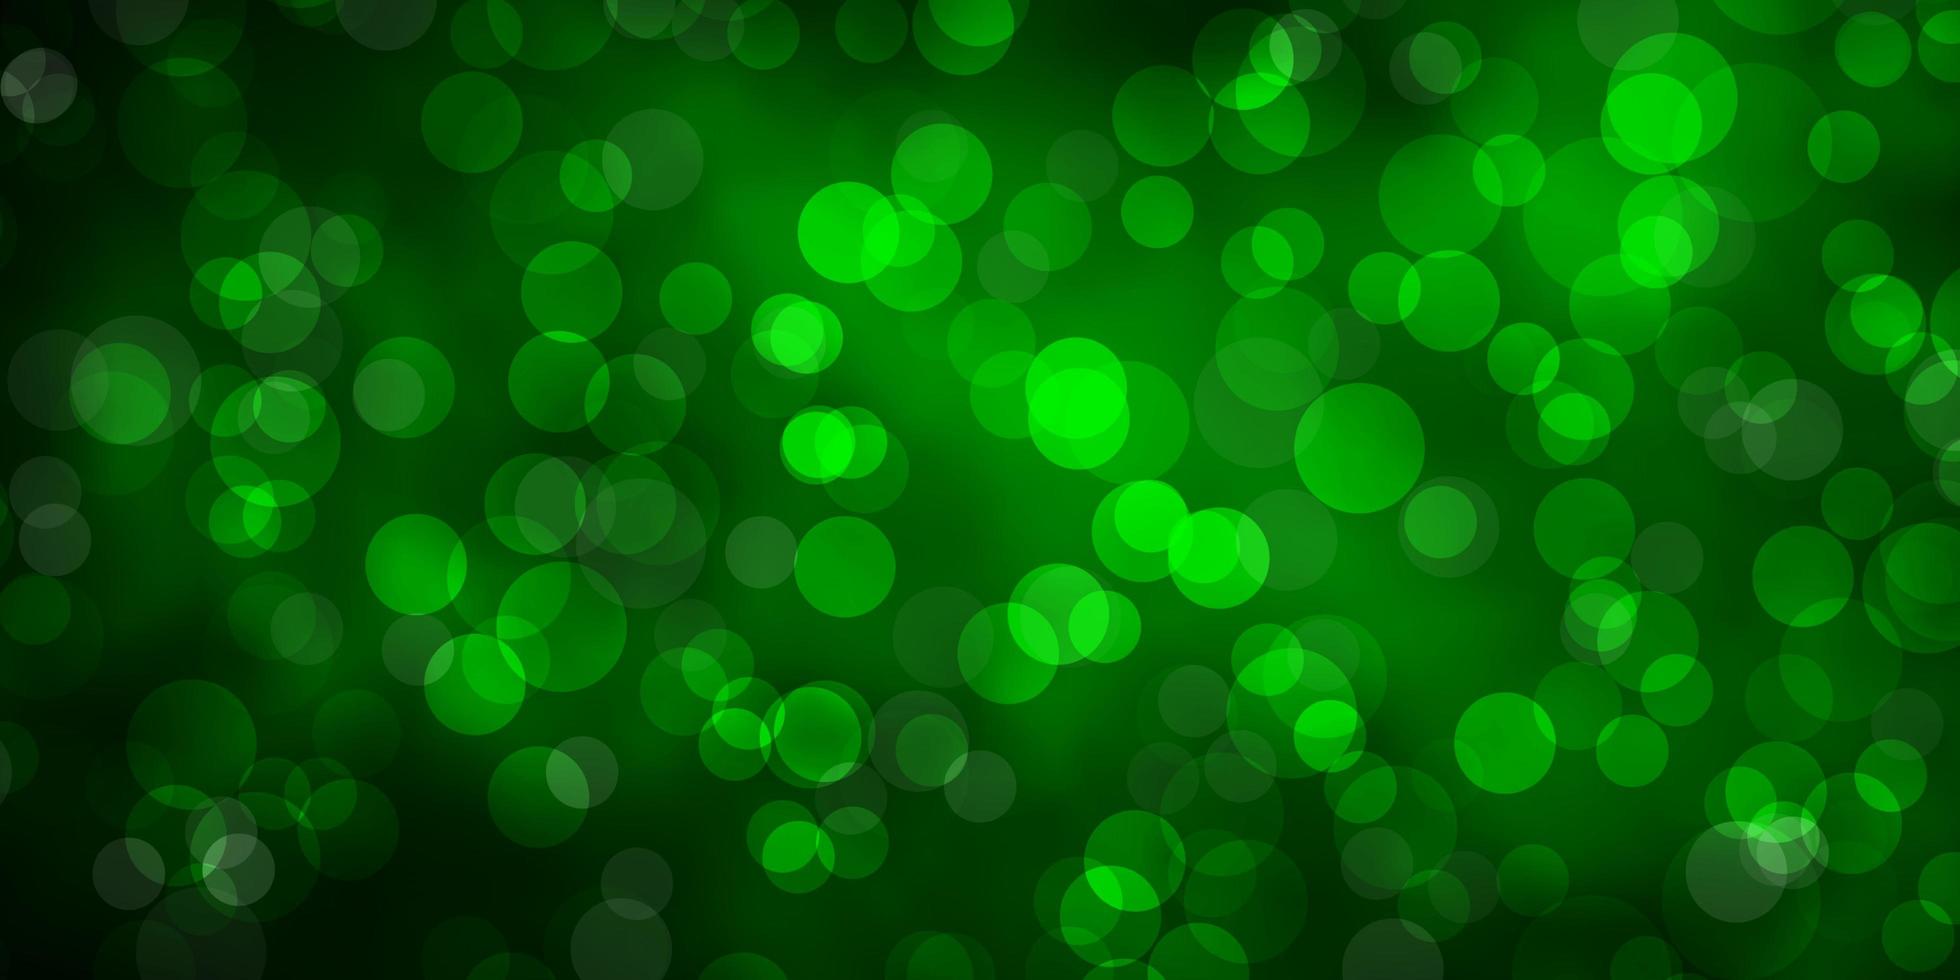 sfondo vettoriale verde scuro con le bollicine. illustrazione astratta con macchie colorate in stile natura. modello per libretti, volantini.